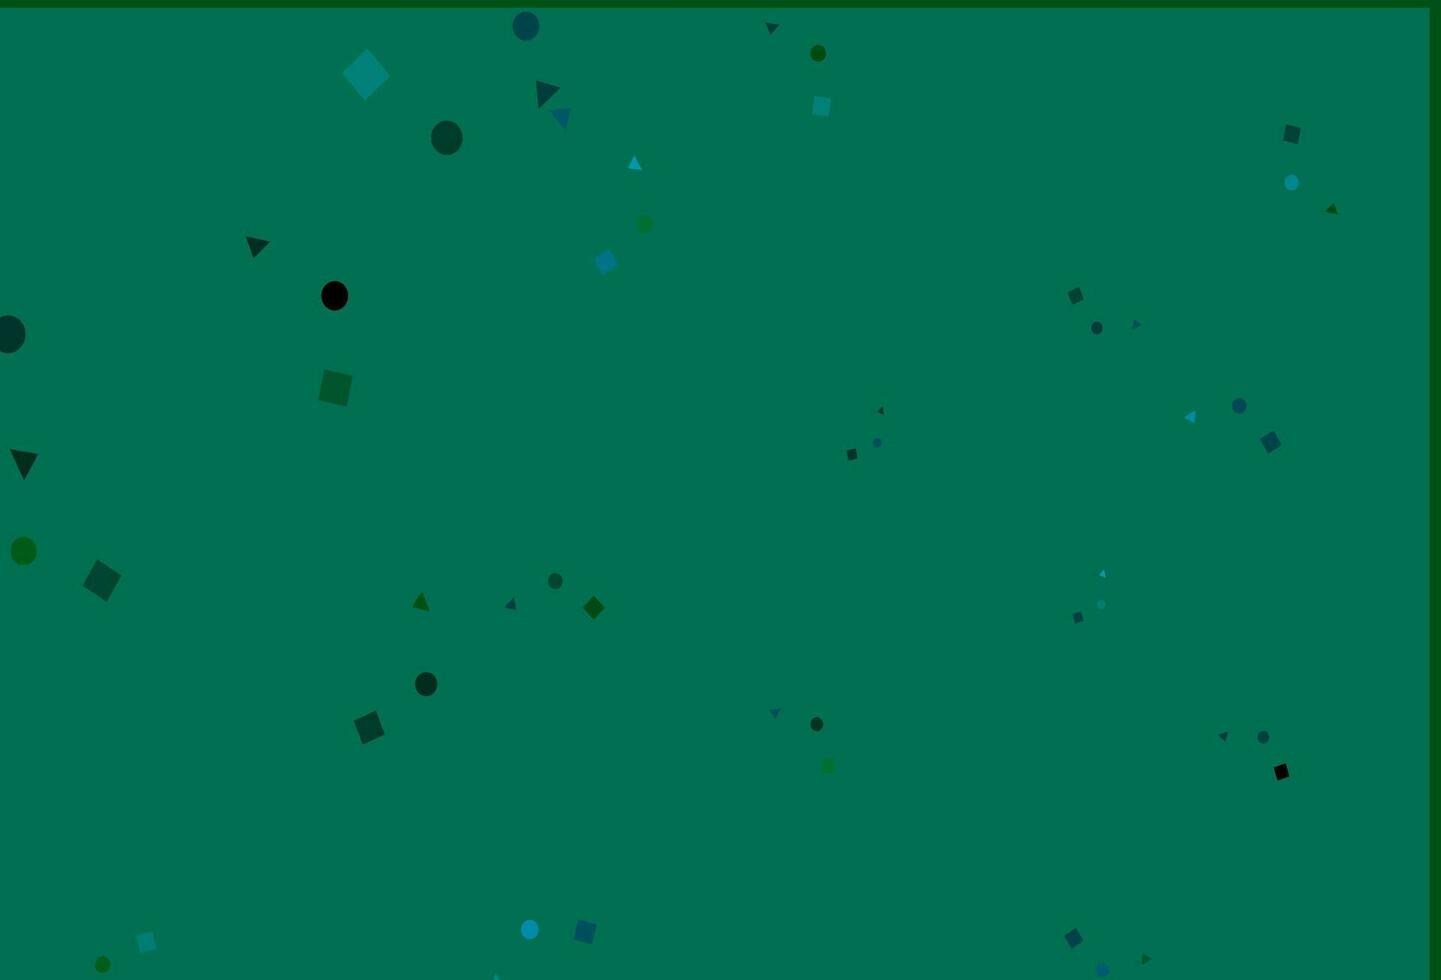 textura vector azul, verde claro em estilo poli com círculos, cubos.